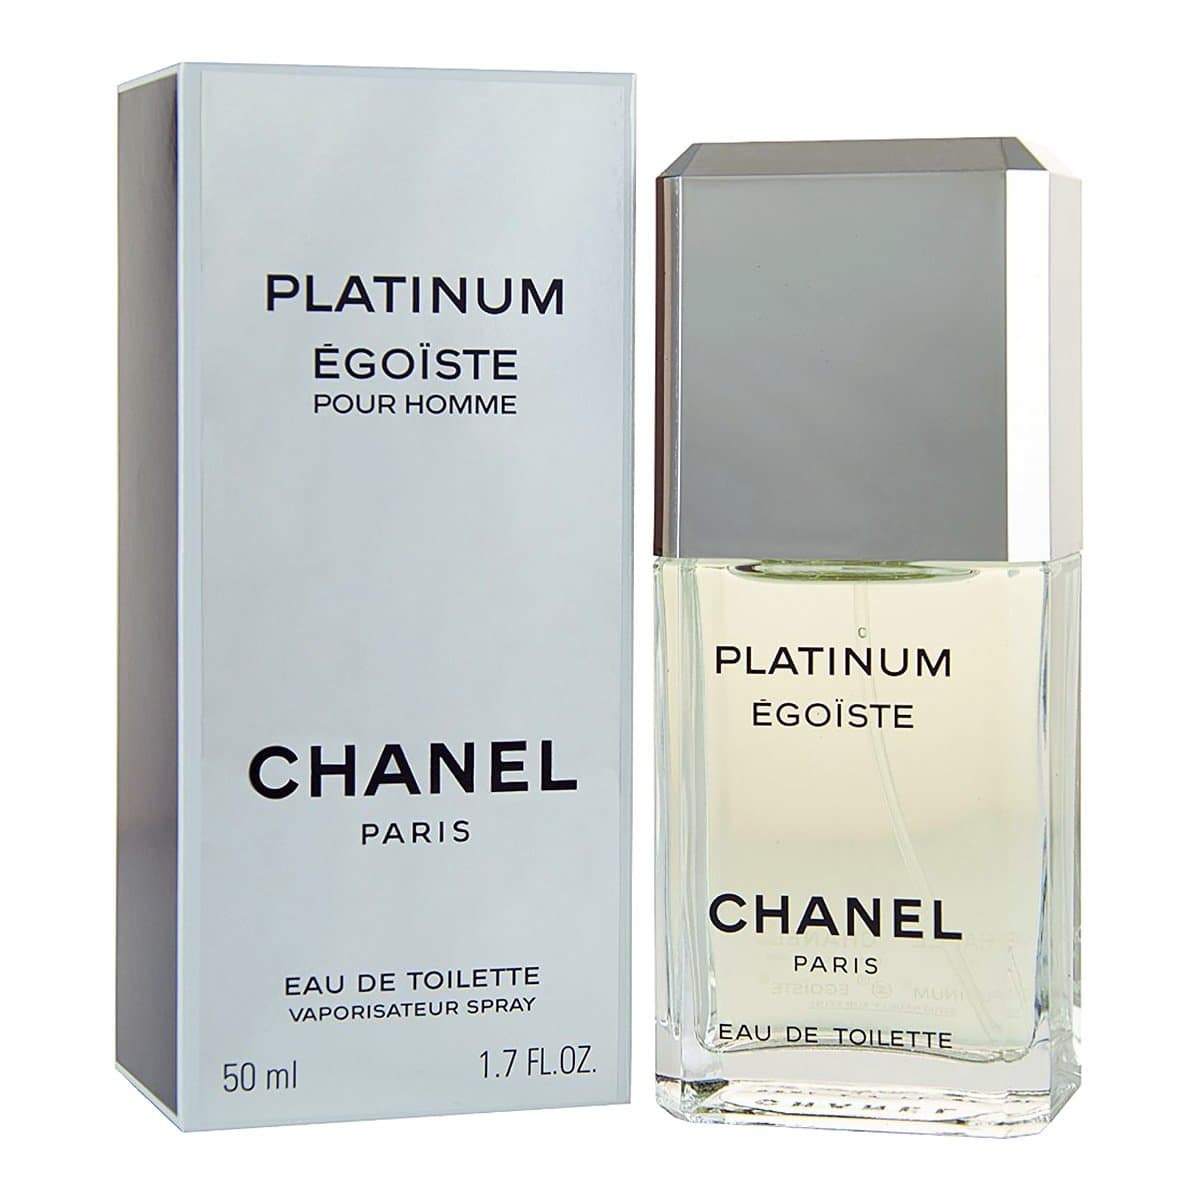 Мужские духи Chanel Egoiste Platinum, туалетная вода Шанель Эгоист